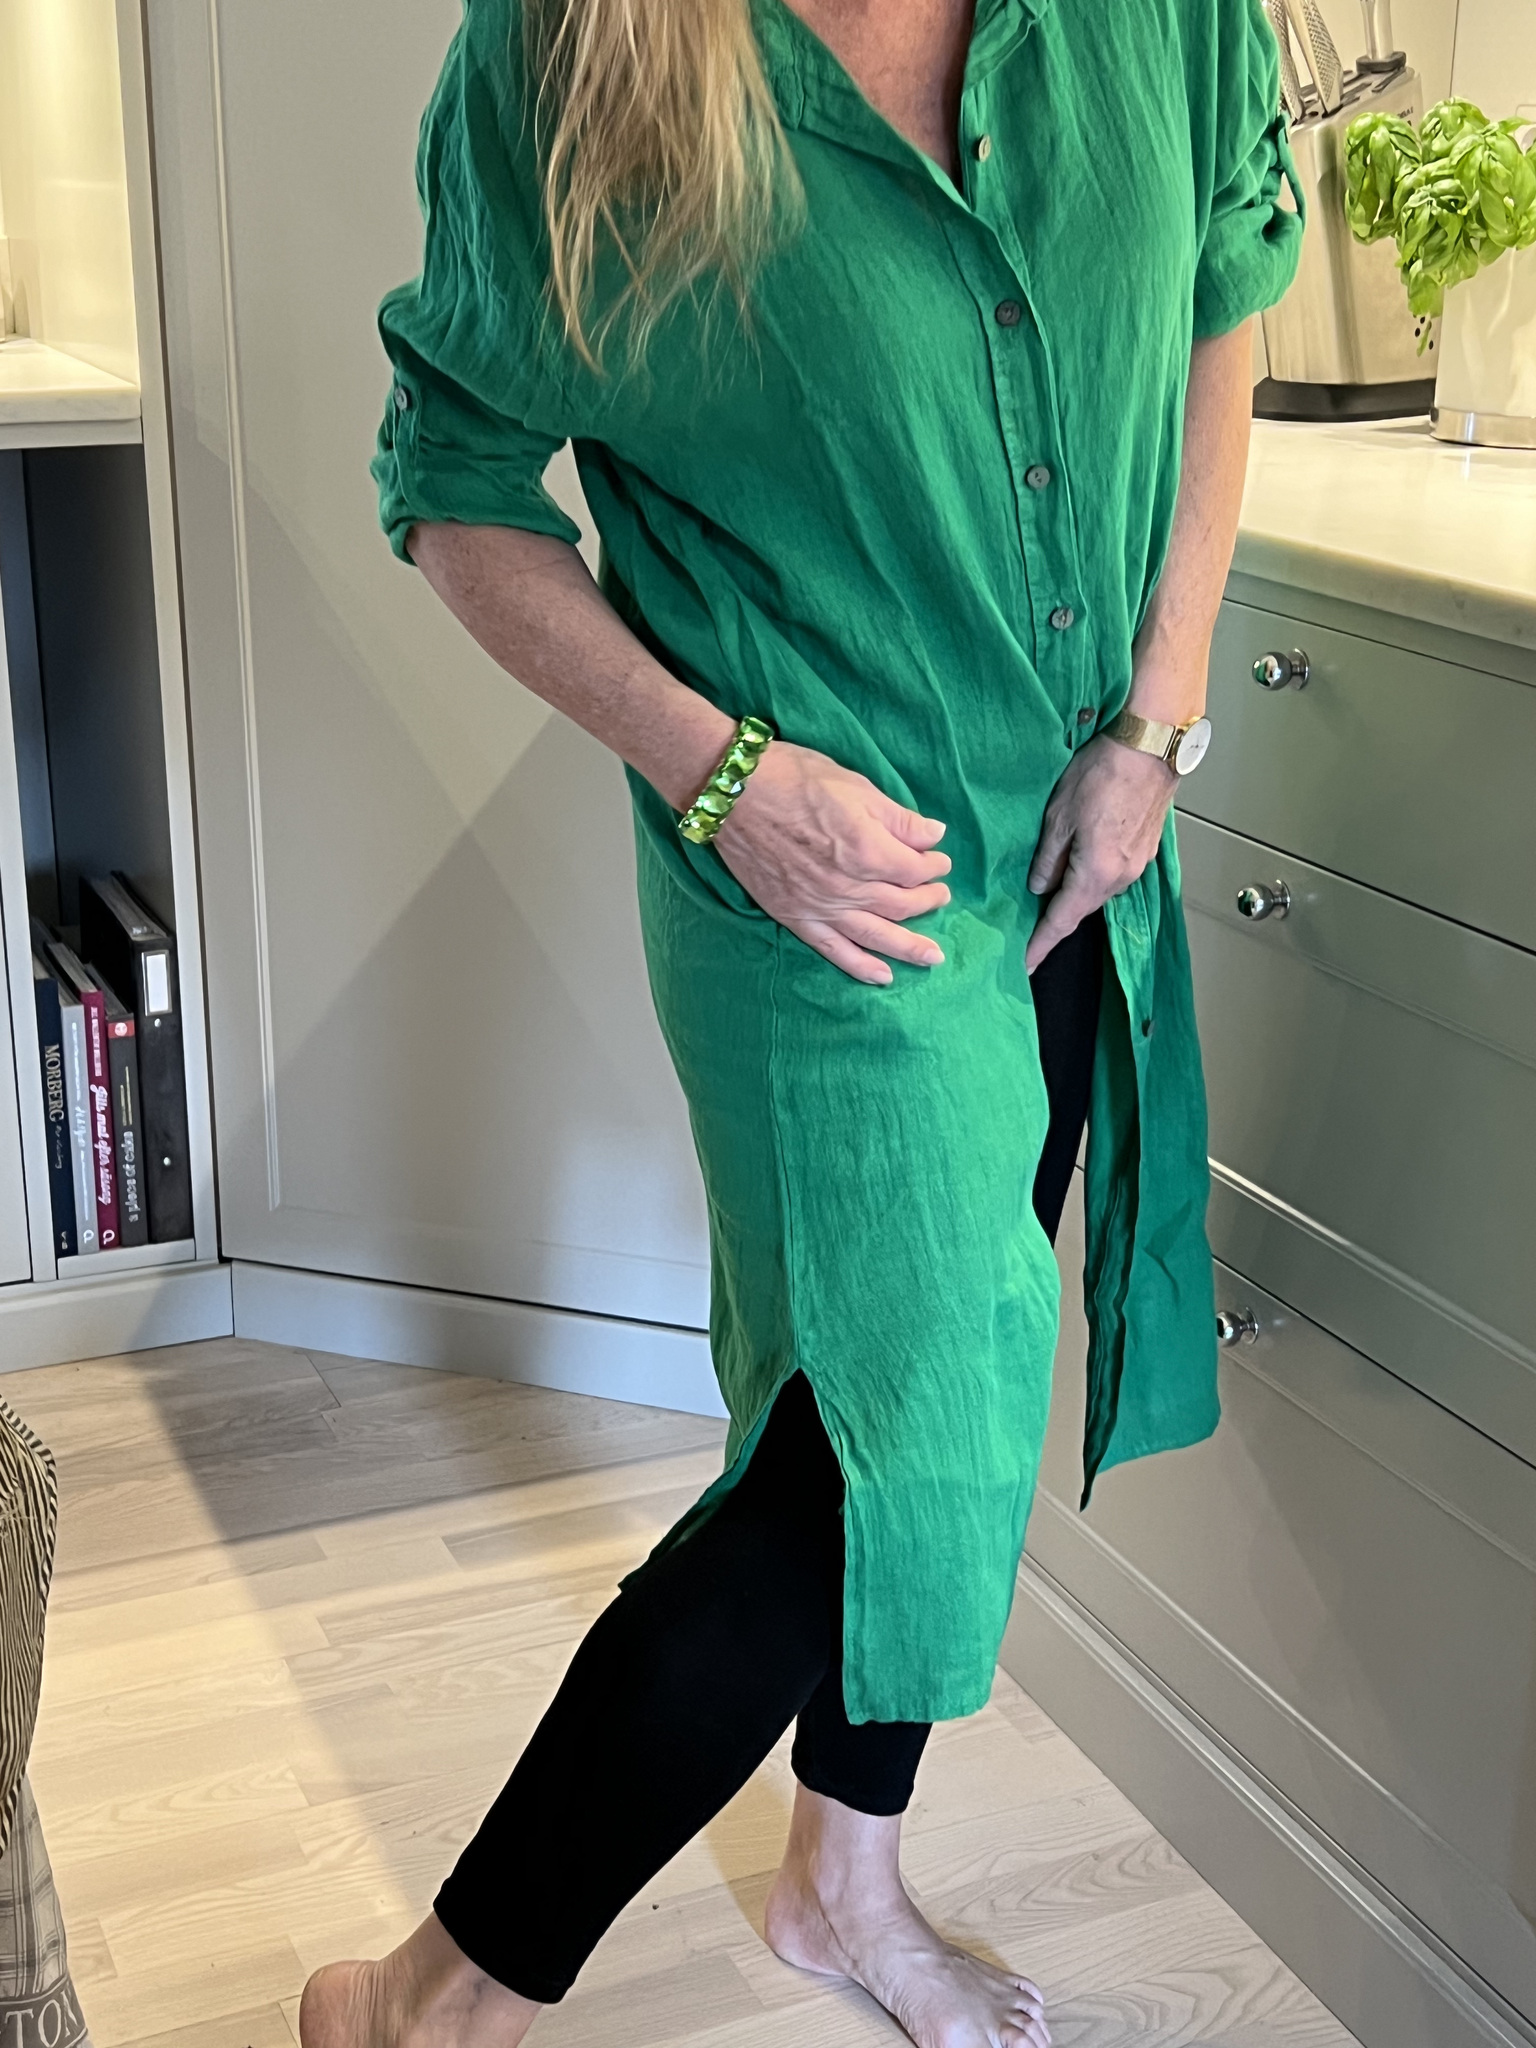 Milano Långskjorta/Klänning Grön